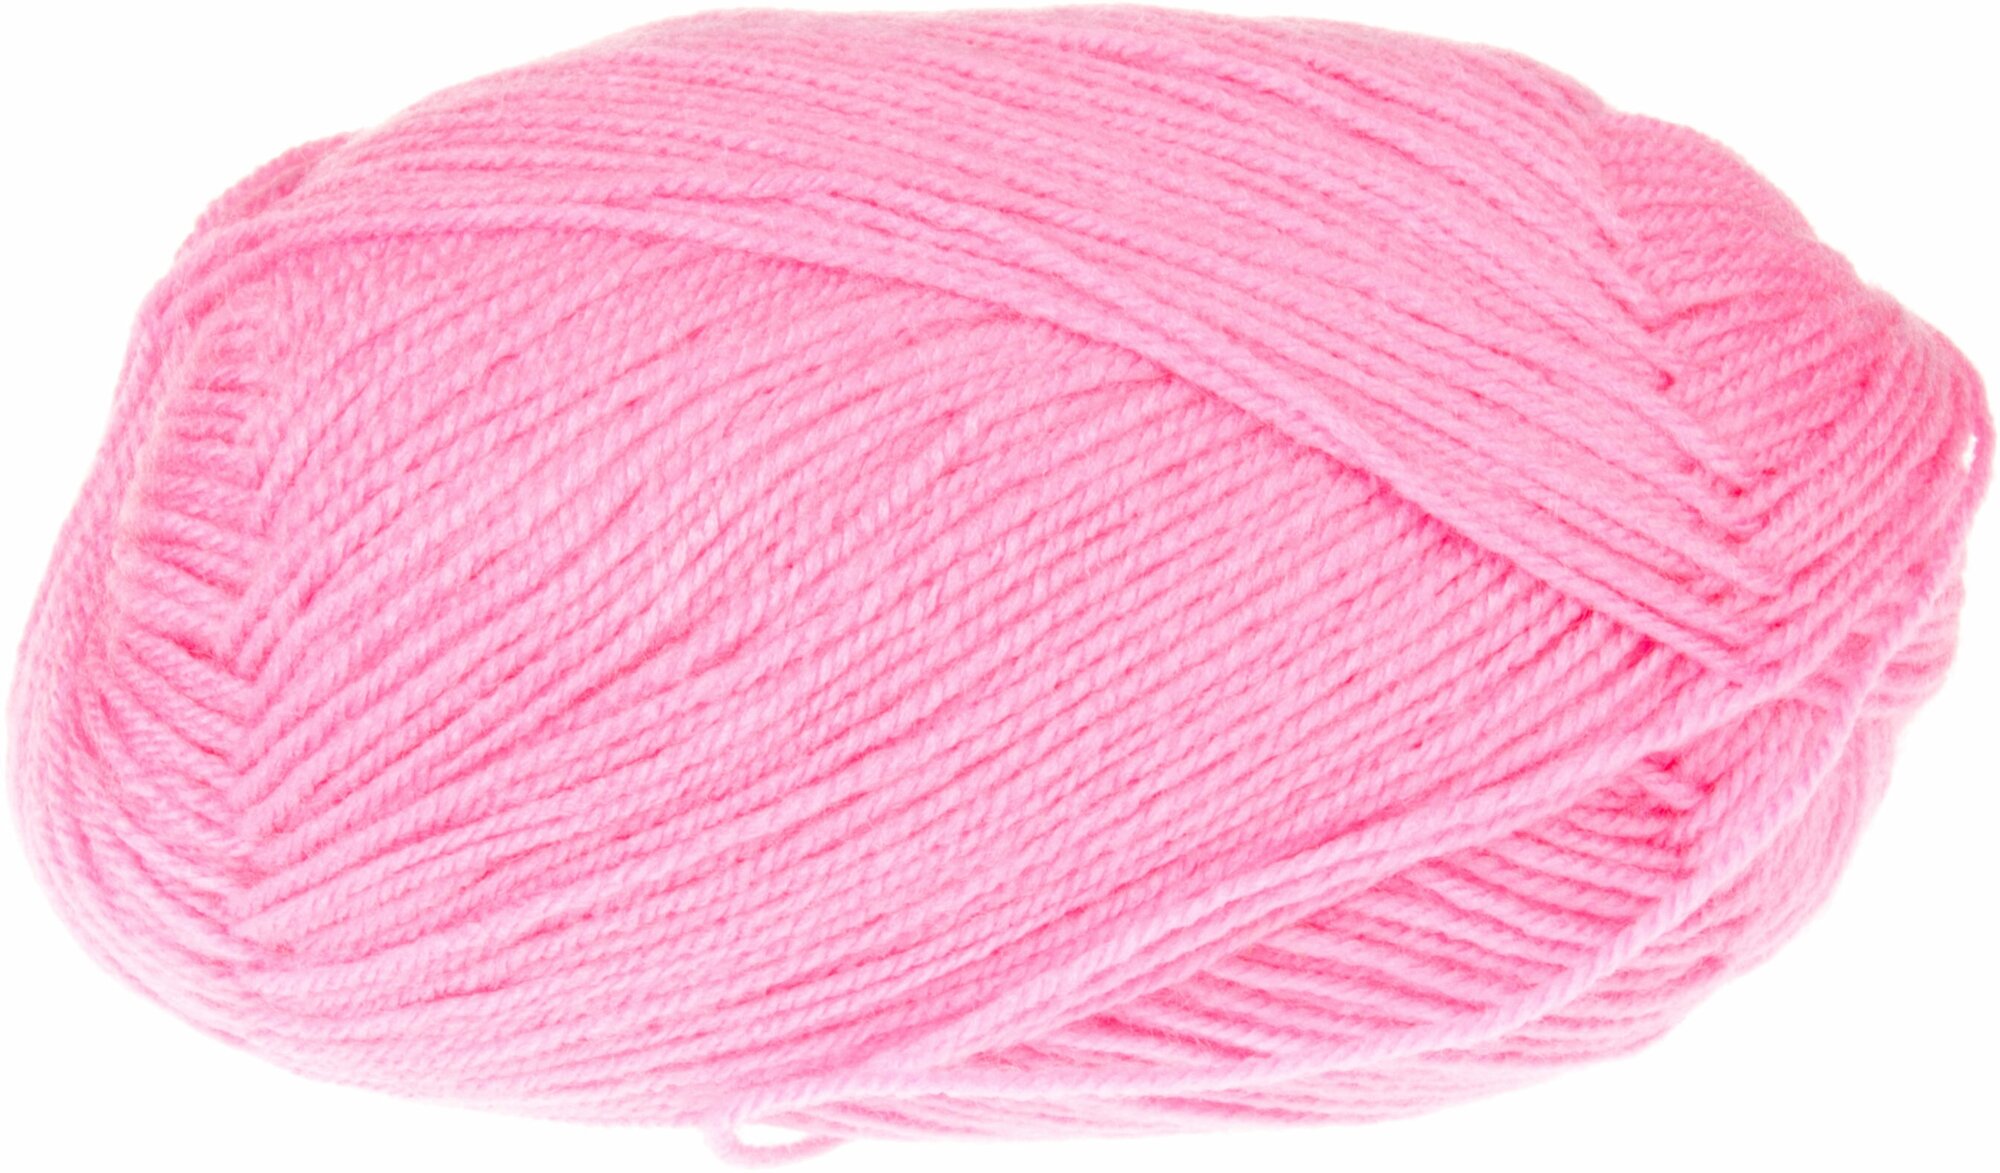 Пряжа Пехорка Детская новинка ярко-розовый (11), 100%высокообъемный акрил, 200м, 50г, 1шт